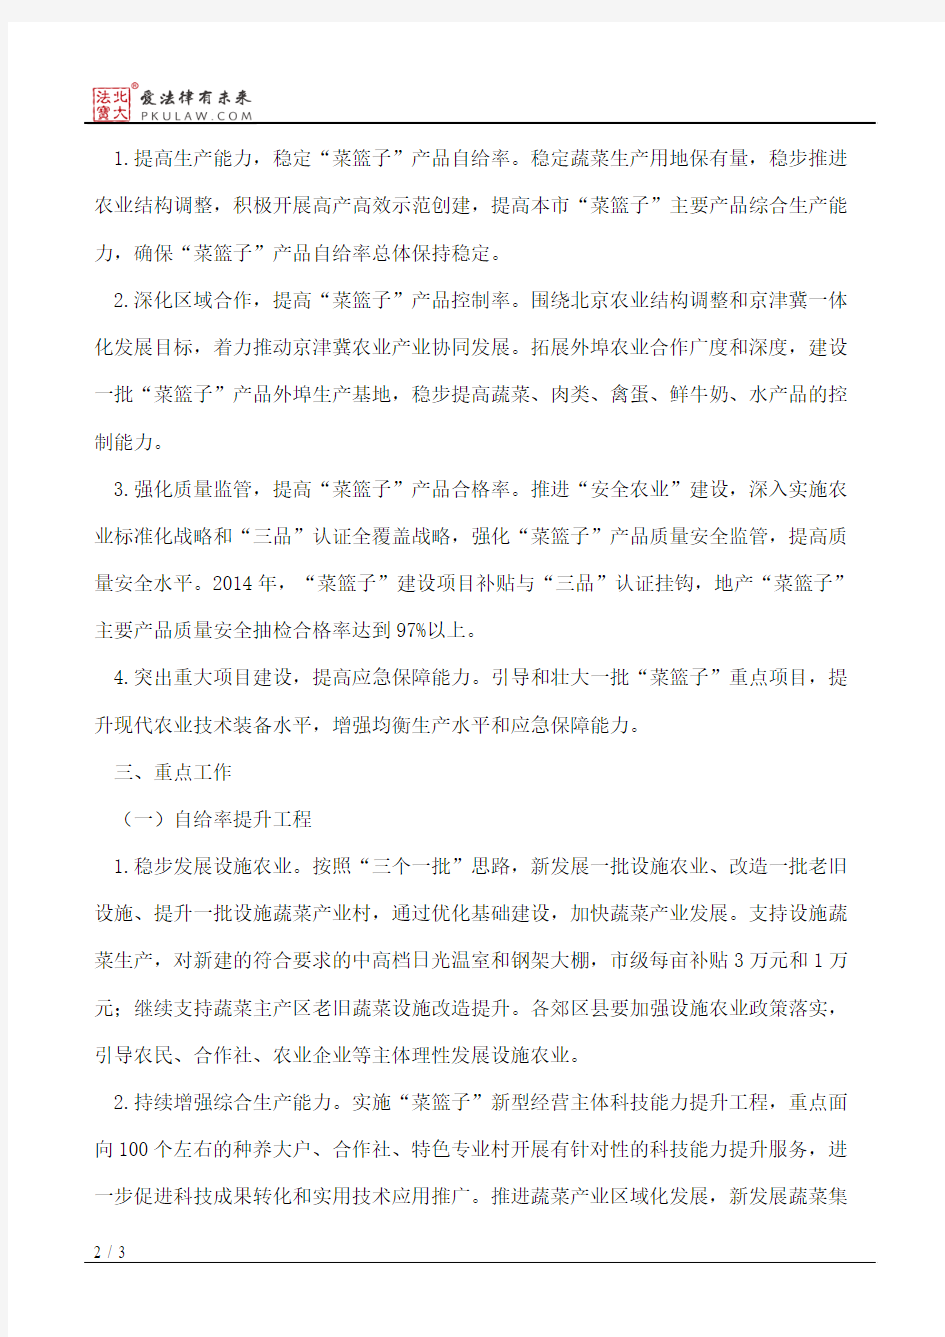 北京市农村工作委员会、北京市财政局、北京市农业局关于2014年“